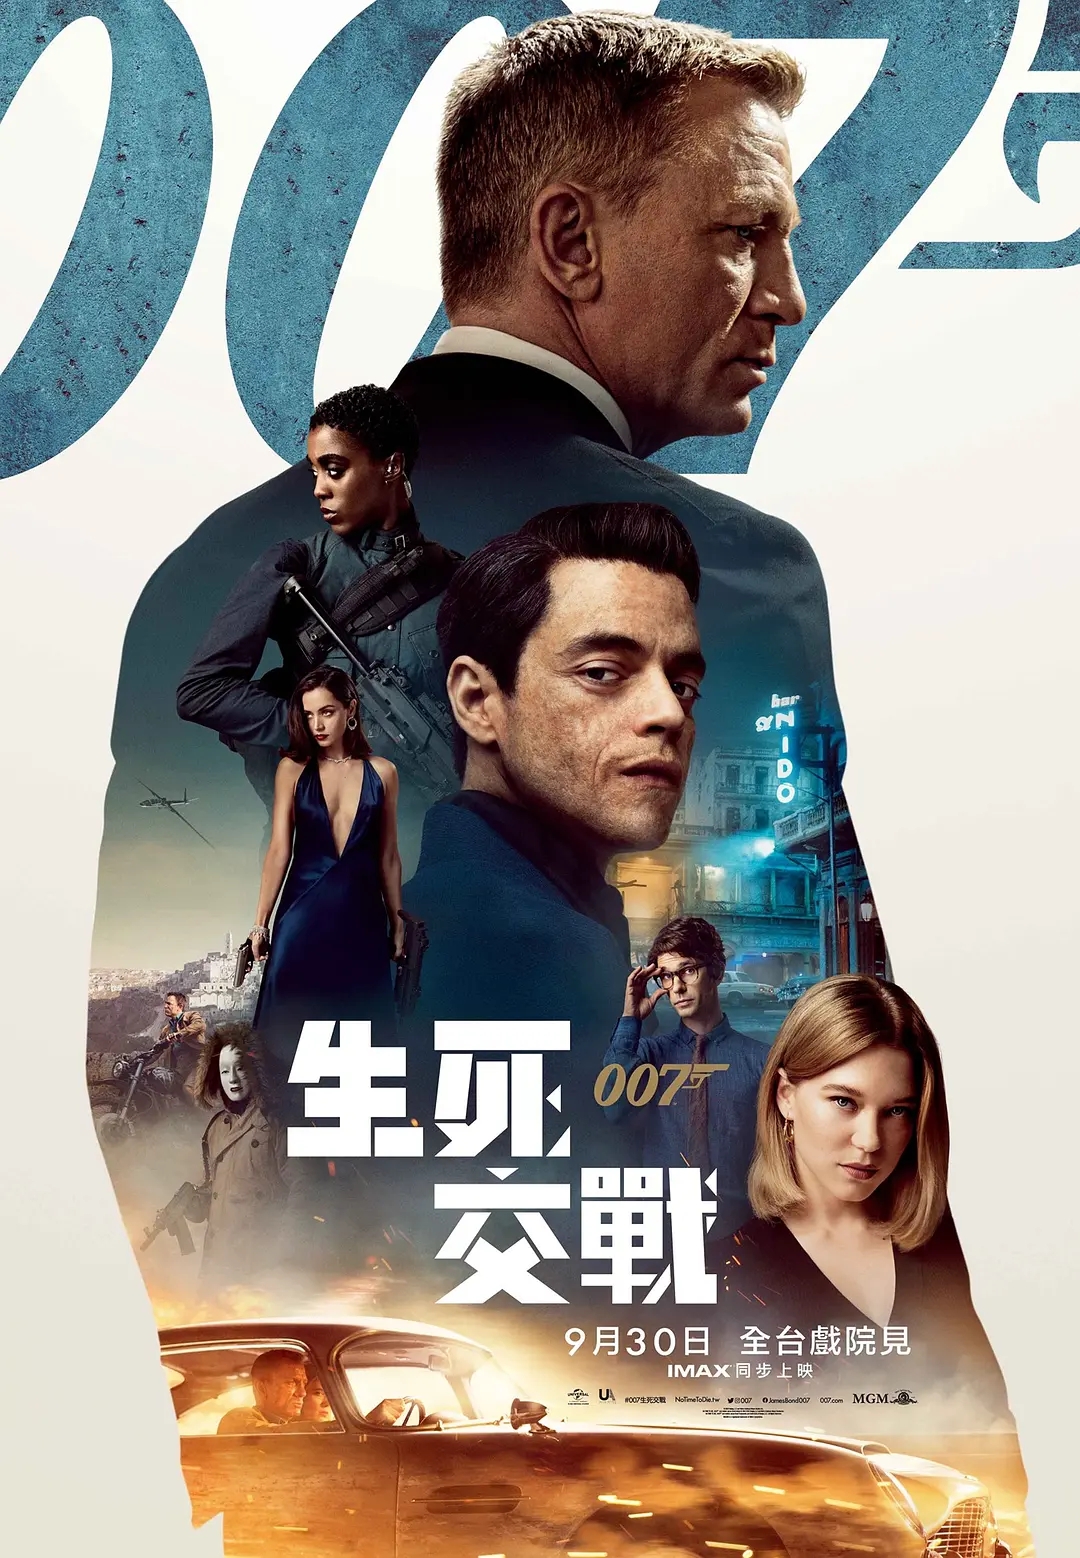 007无暇赴死封面海报图片